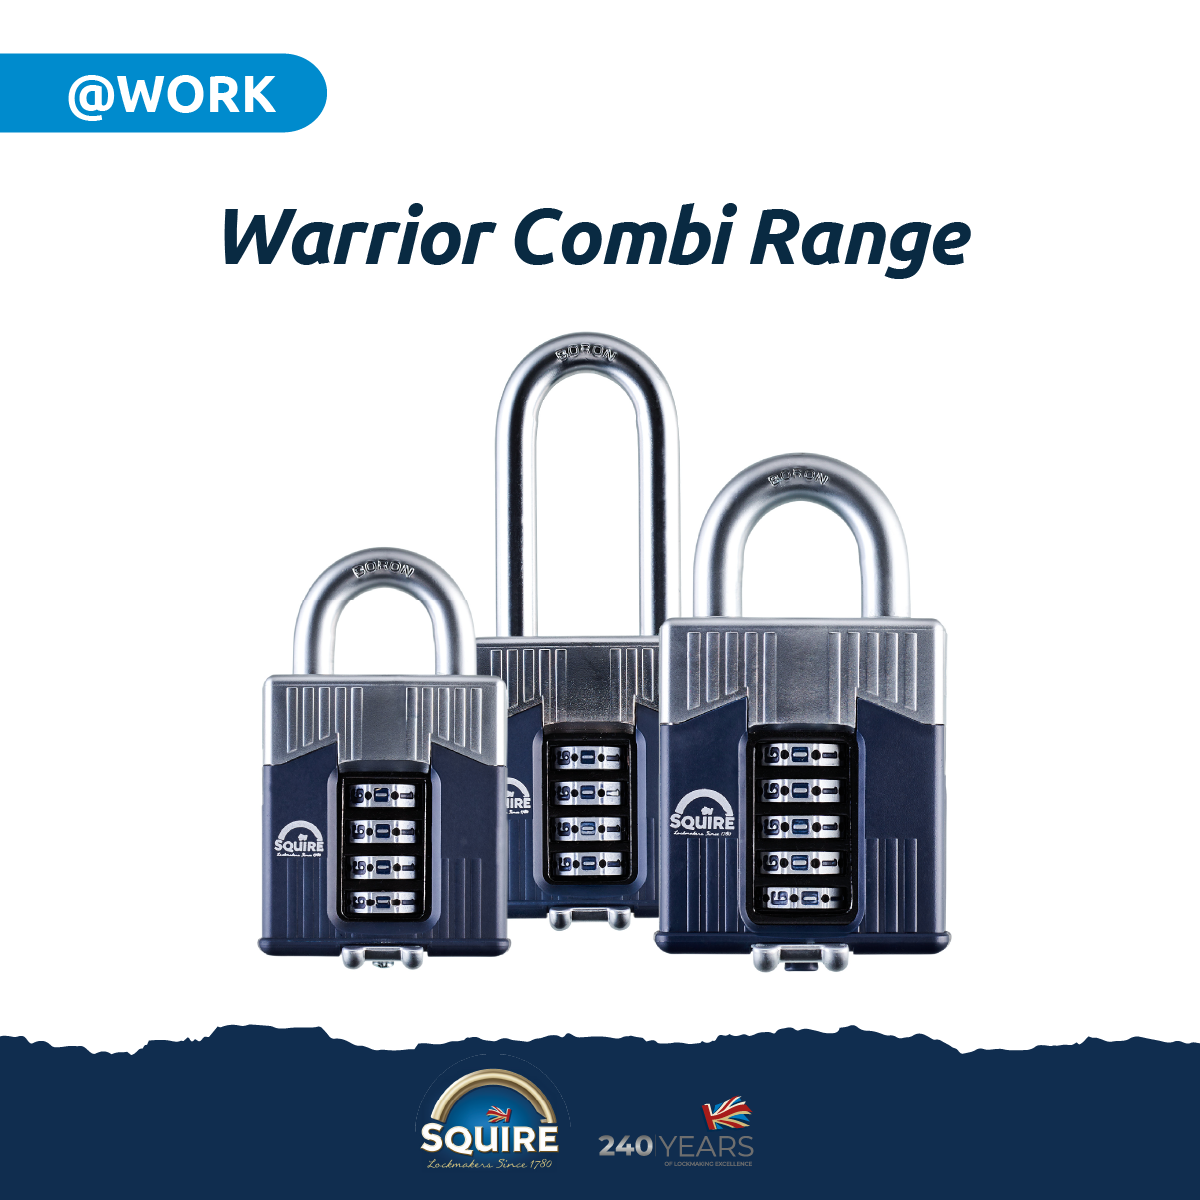 Warrior® Combi Open Shackle